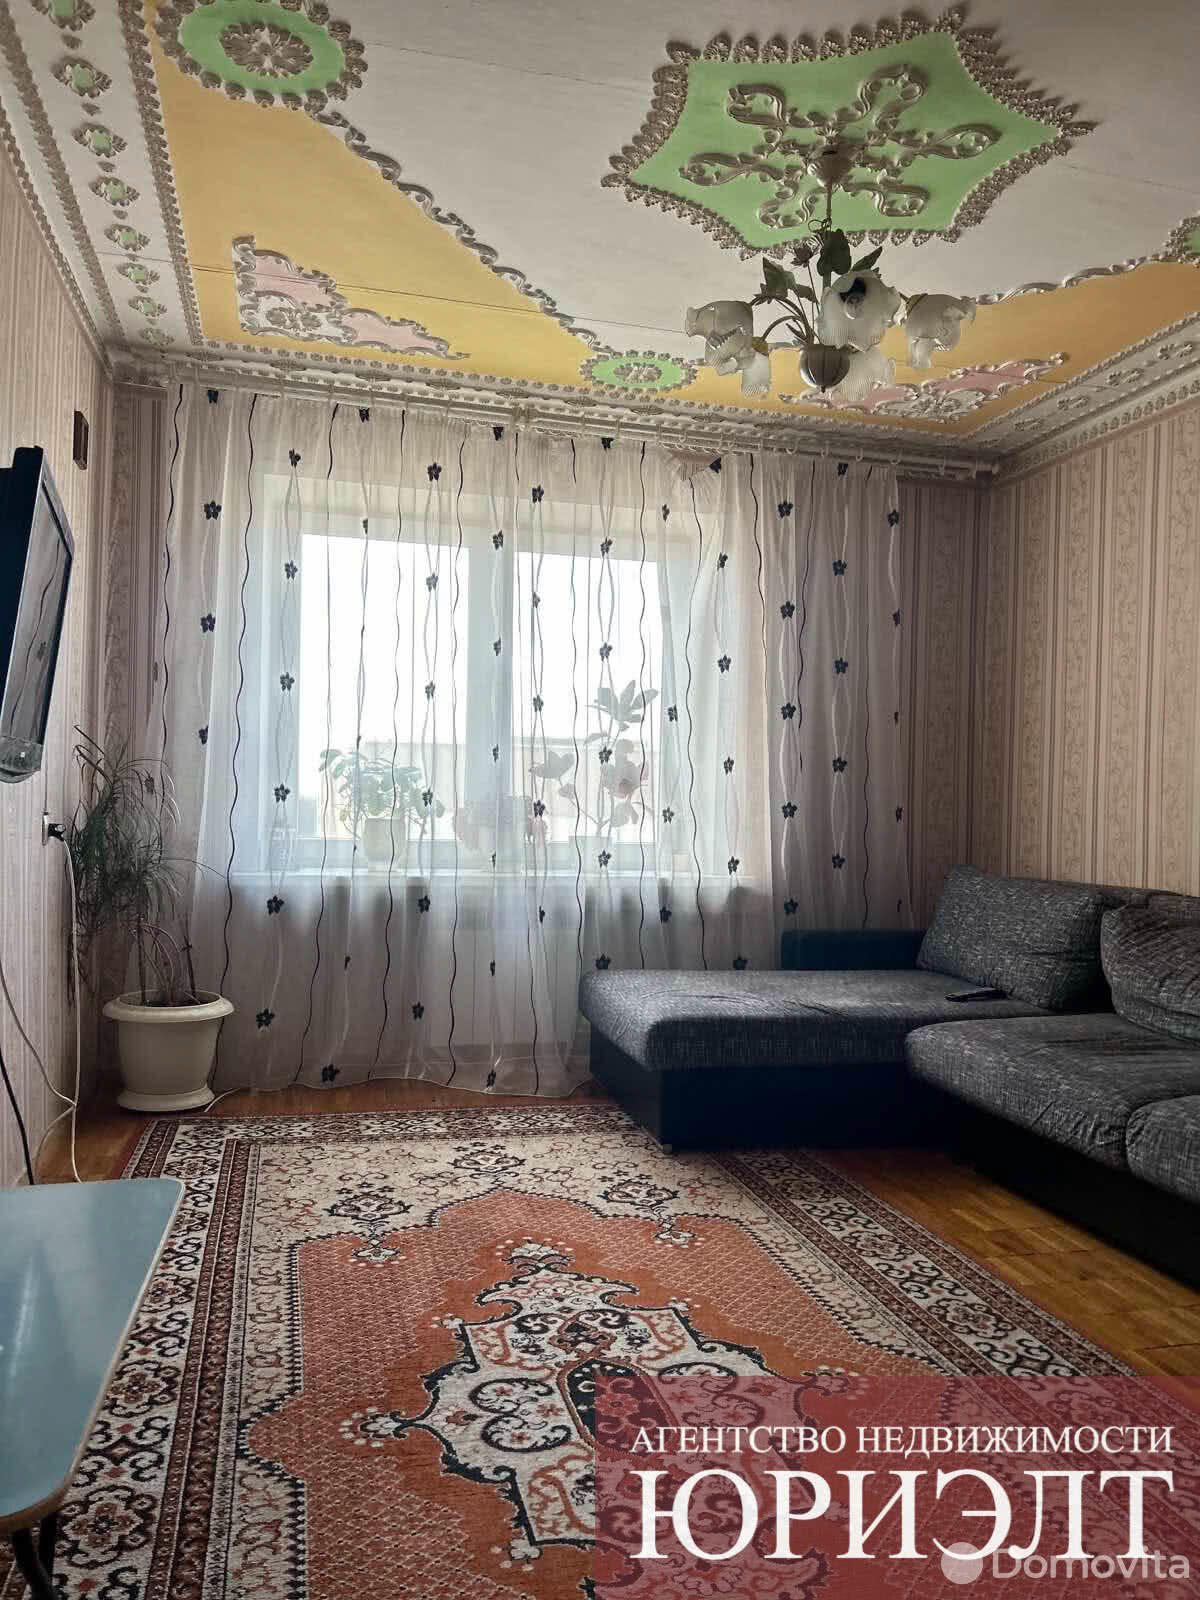 Цена продажи квартиры, Борисов, ул. Гагарина, д. 66